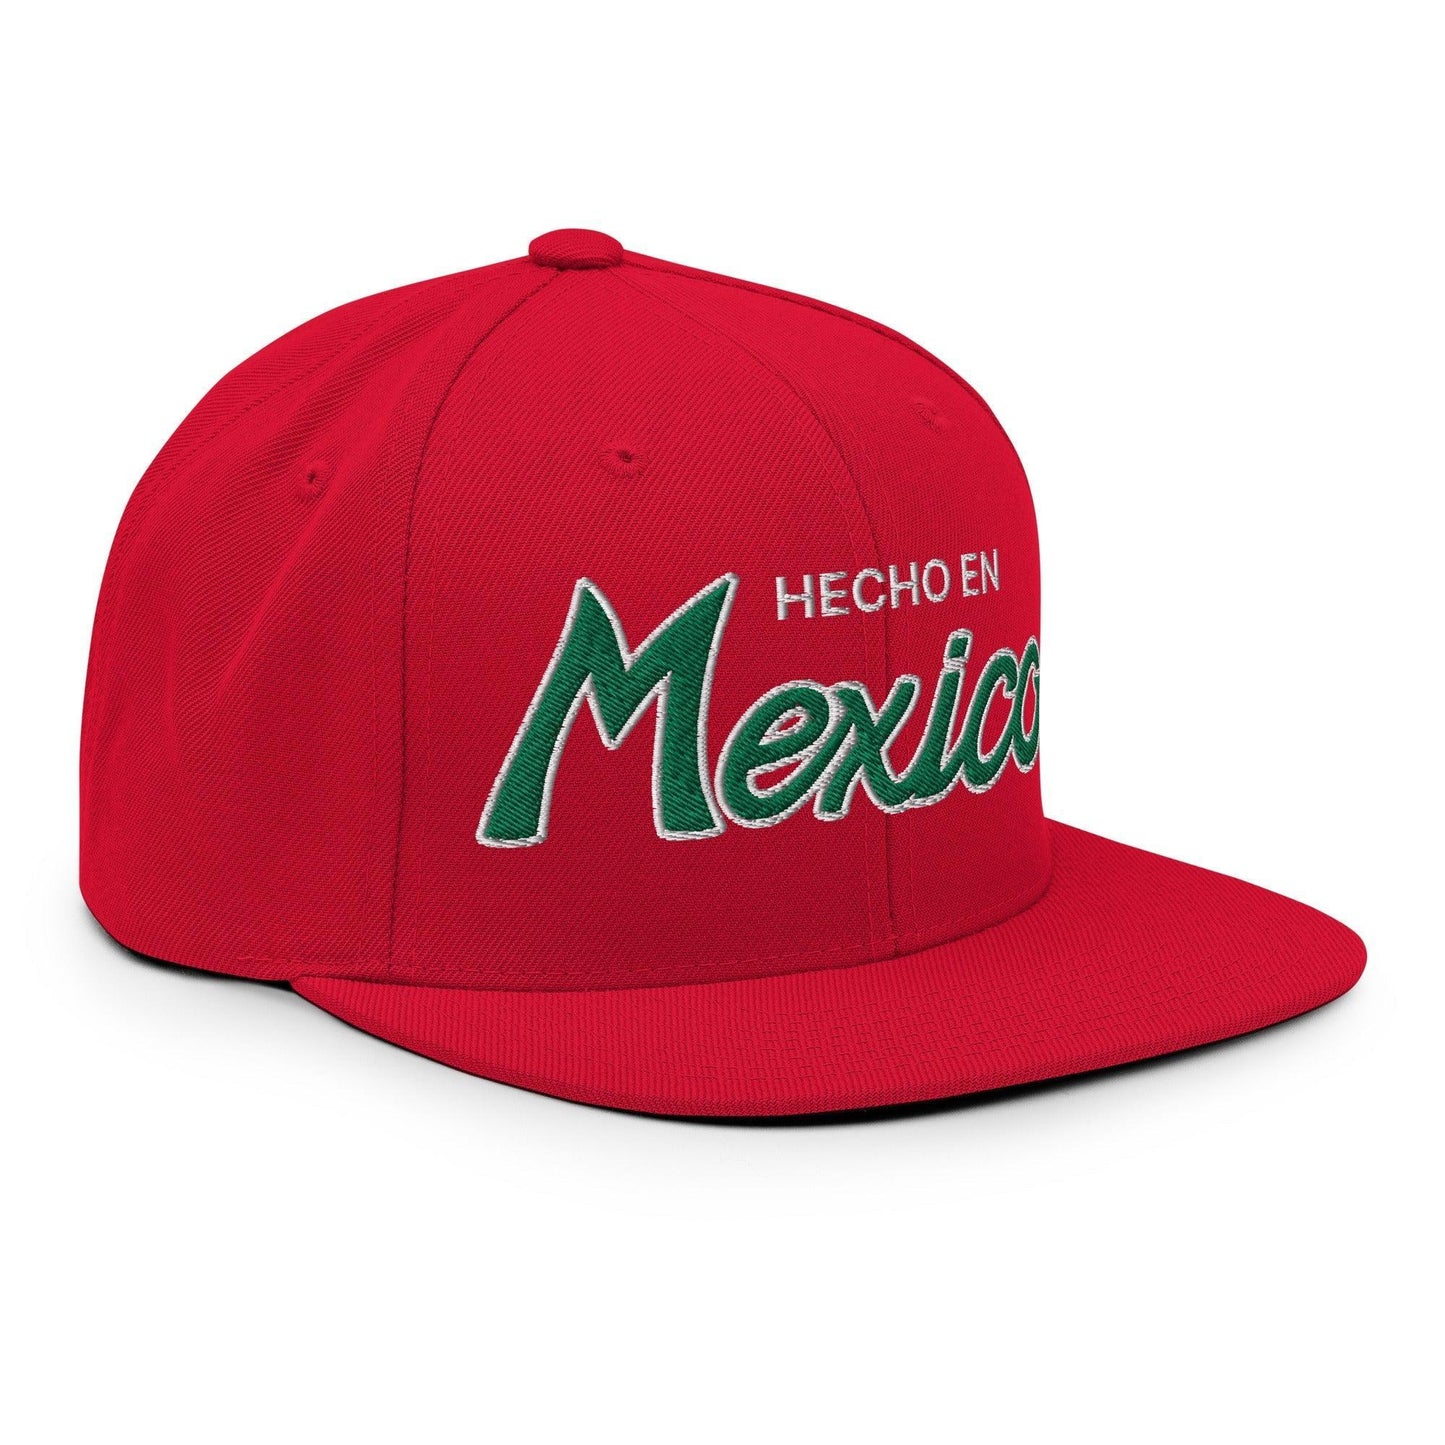 Hecho en Mexico Script Snapback Hat Red by SCRIPT HATS | Script Hats